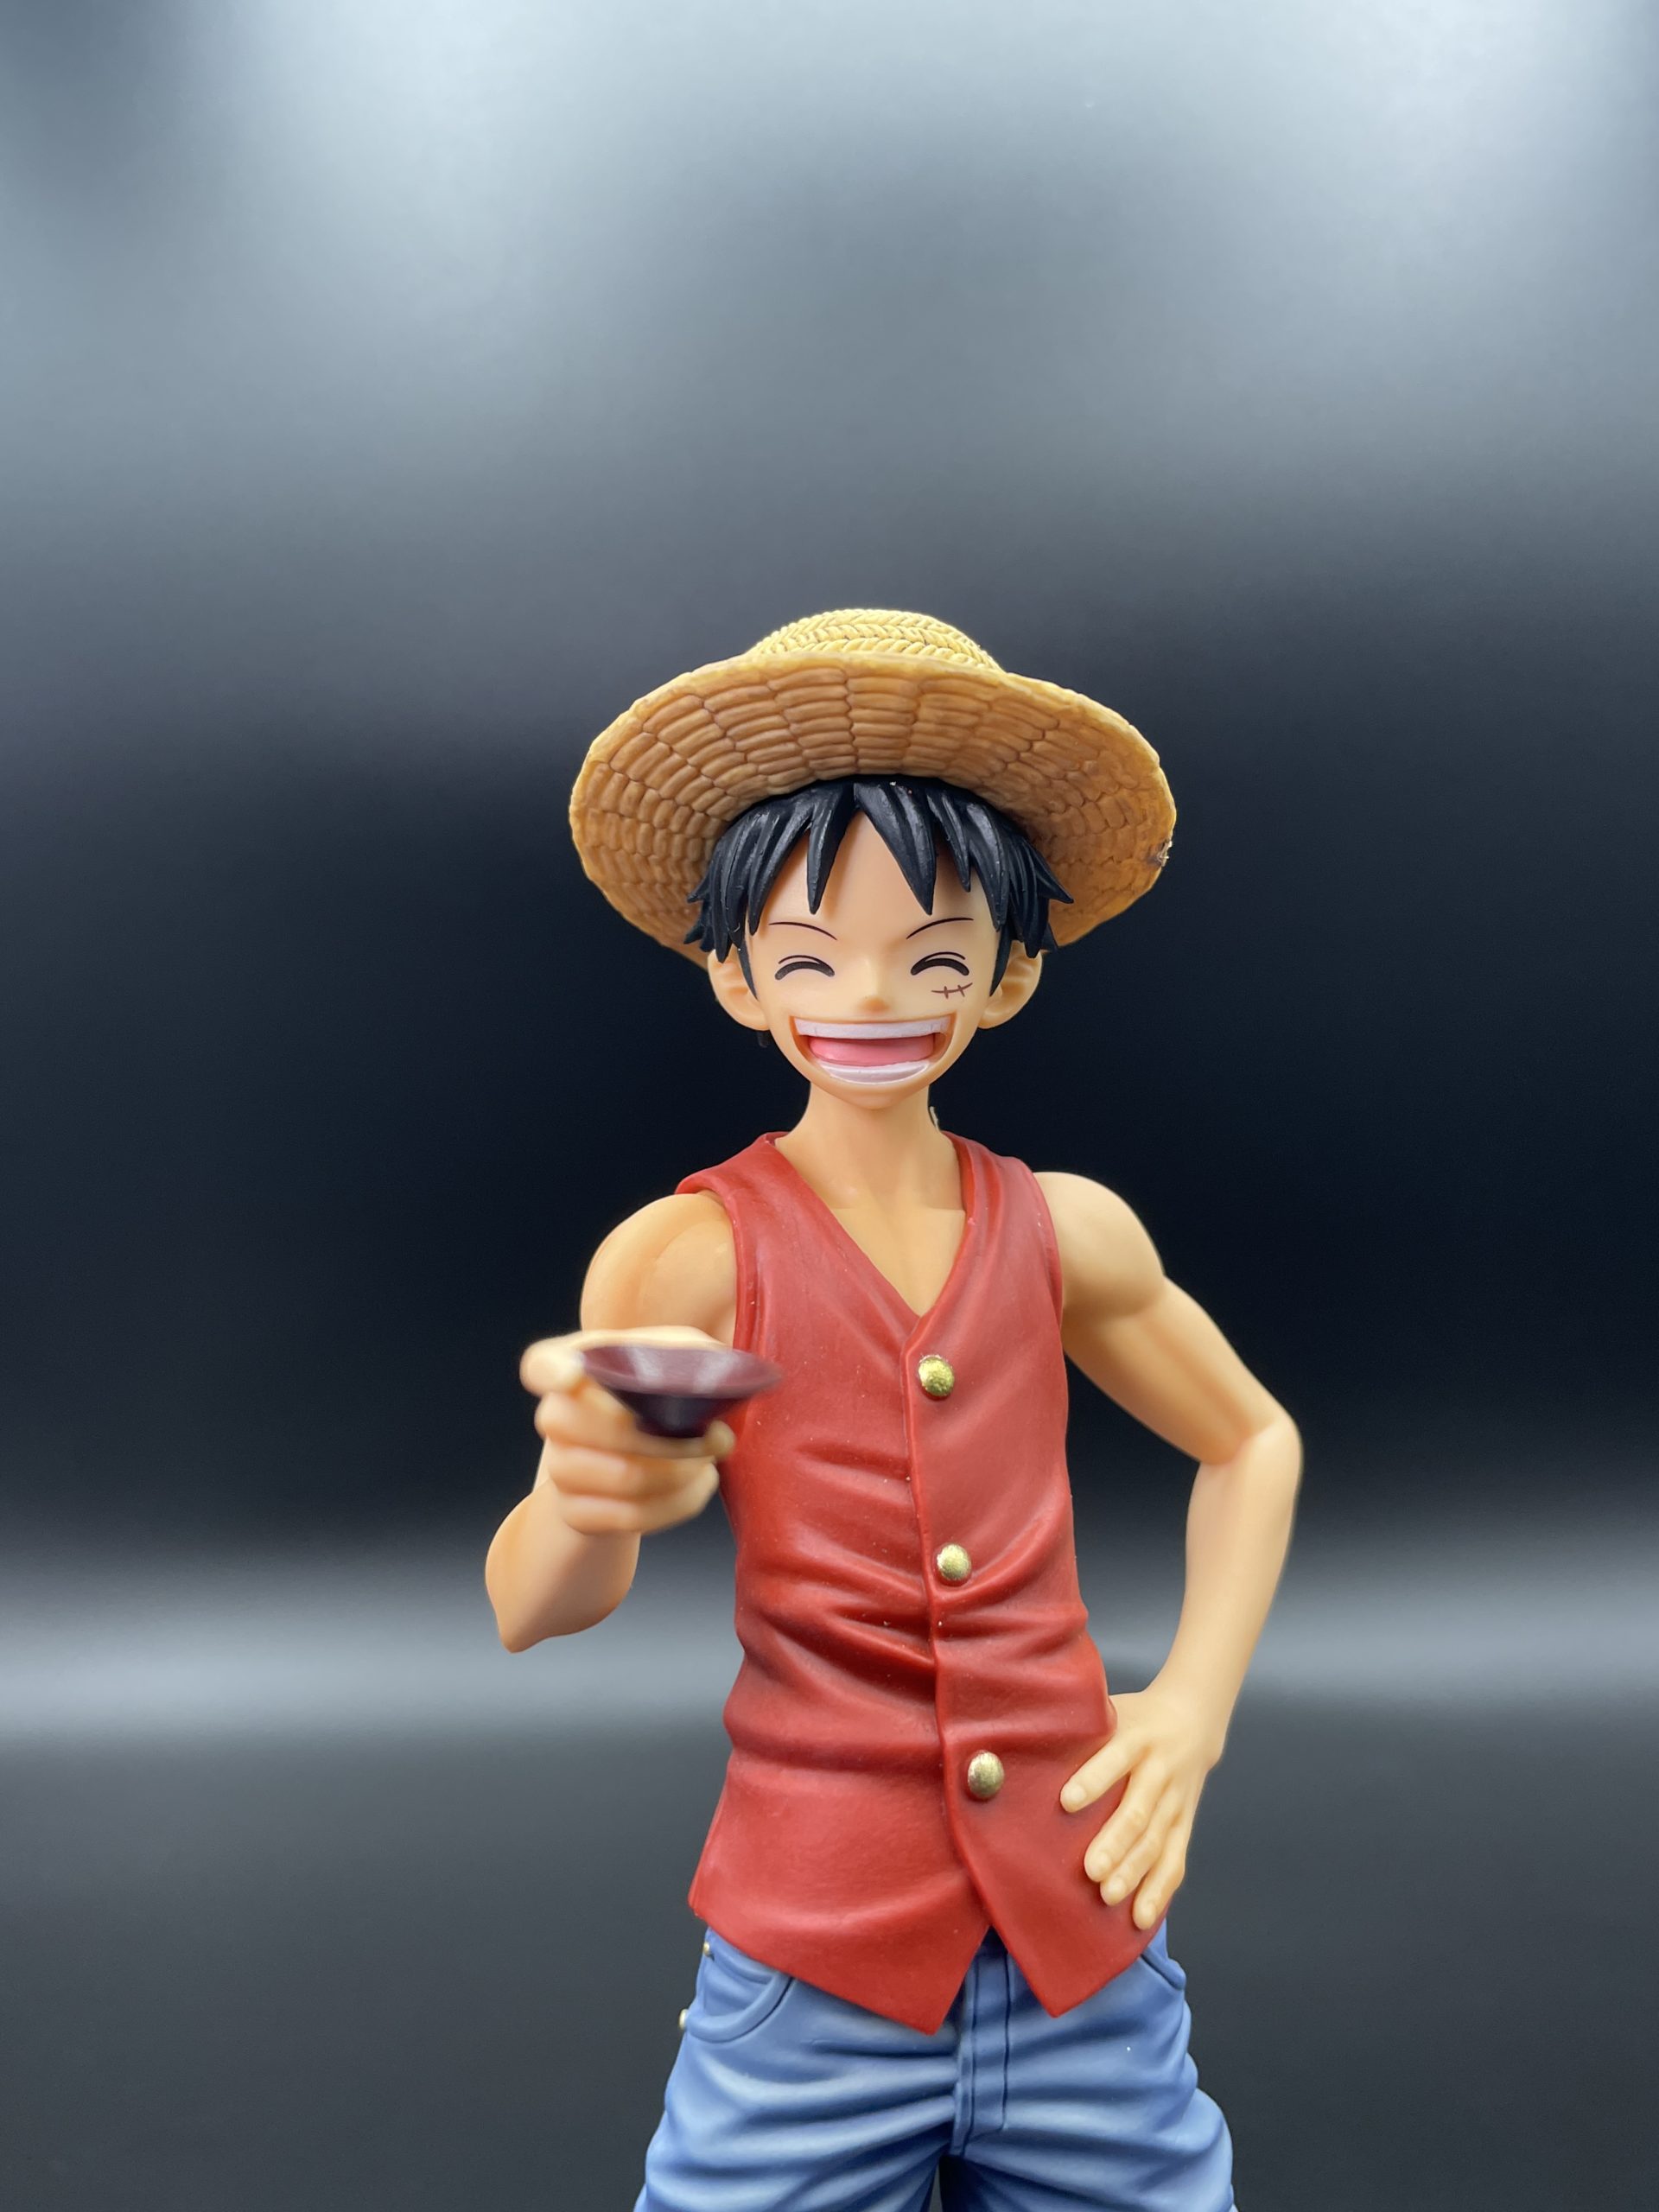 プライズフィギュア One Piece Magazine Figure Special Episode Luff ルフィ Vol １レビュー ゲーセン景品 おちむかえブログ